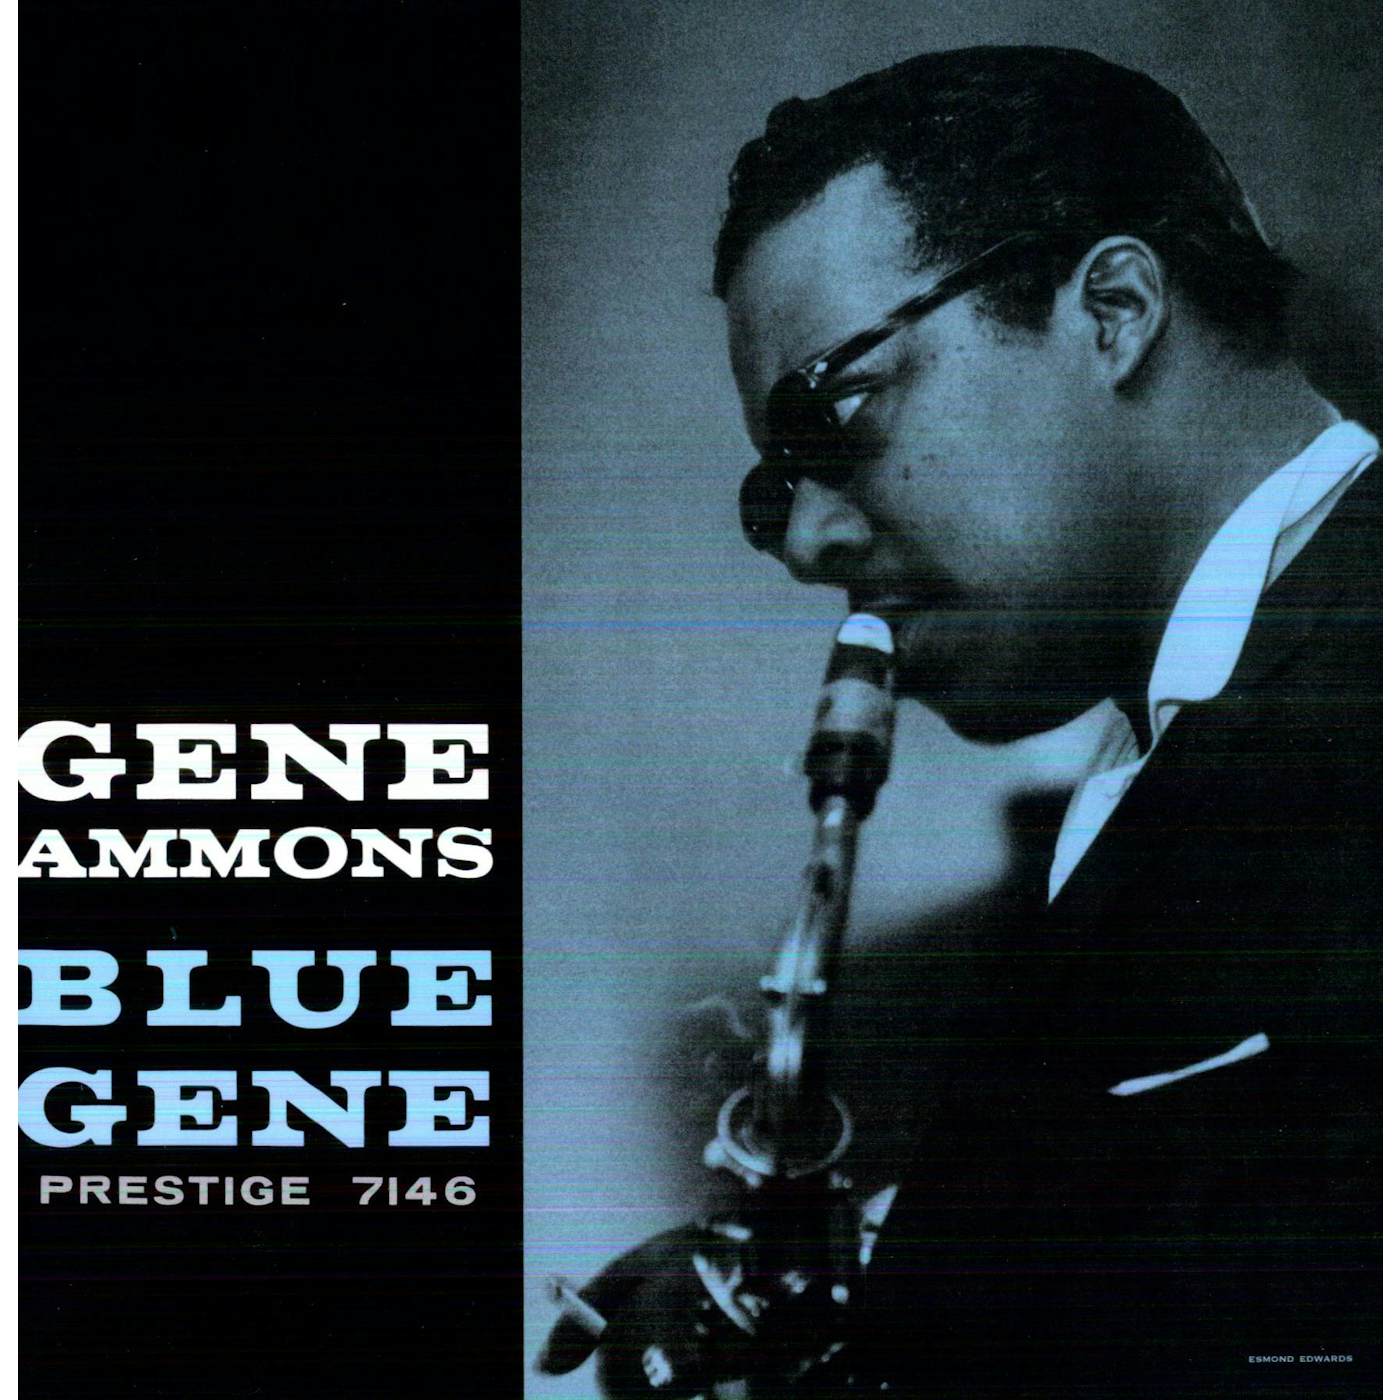 Gene Ammons Blue Gene Vinyl Record